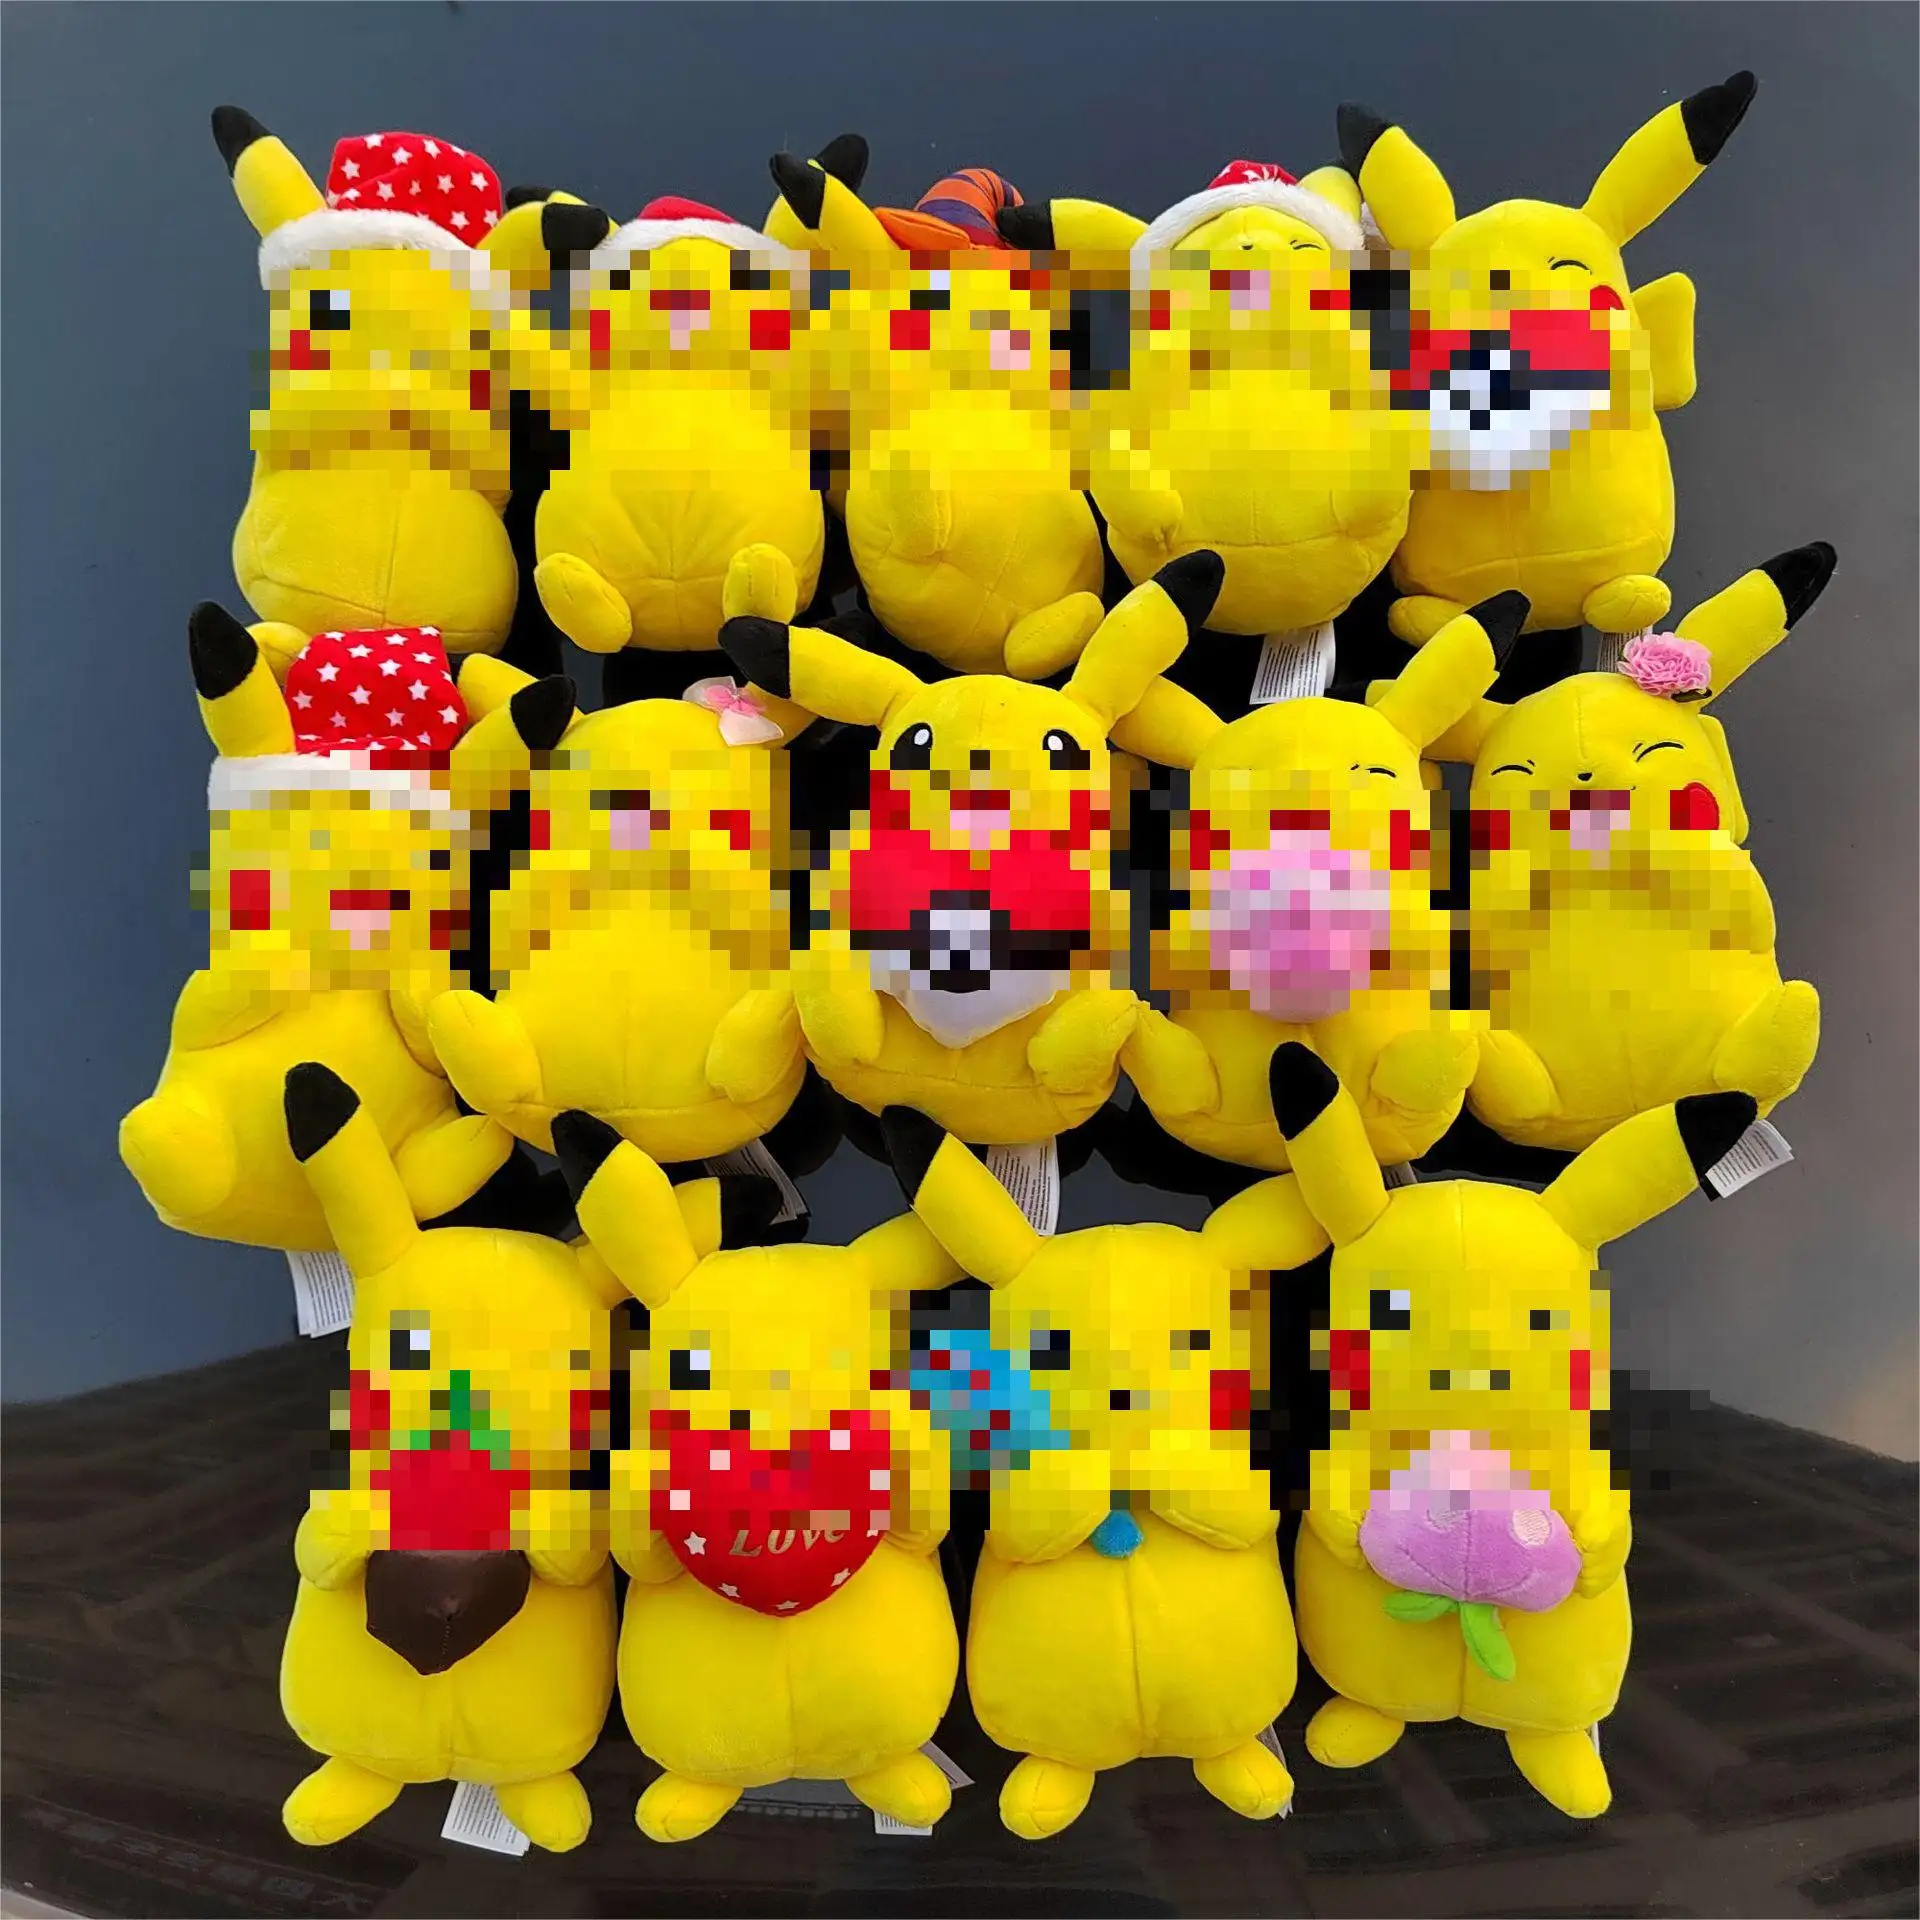 Mainan mewah Pikachua multi Warna mainan desain baru boneka Anime pokemon film hadiah ulang tahun Halloween Natal untuk anak-anak